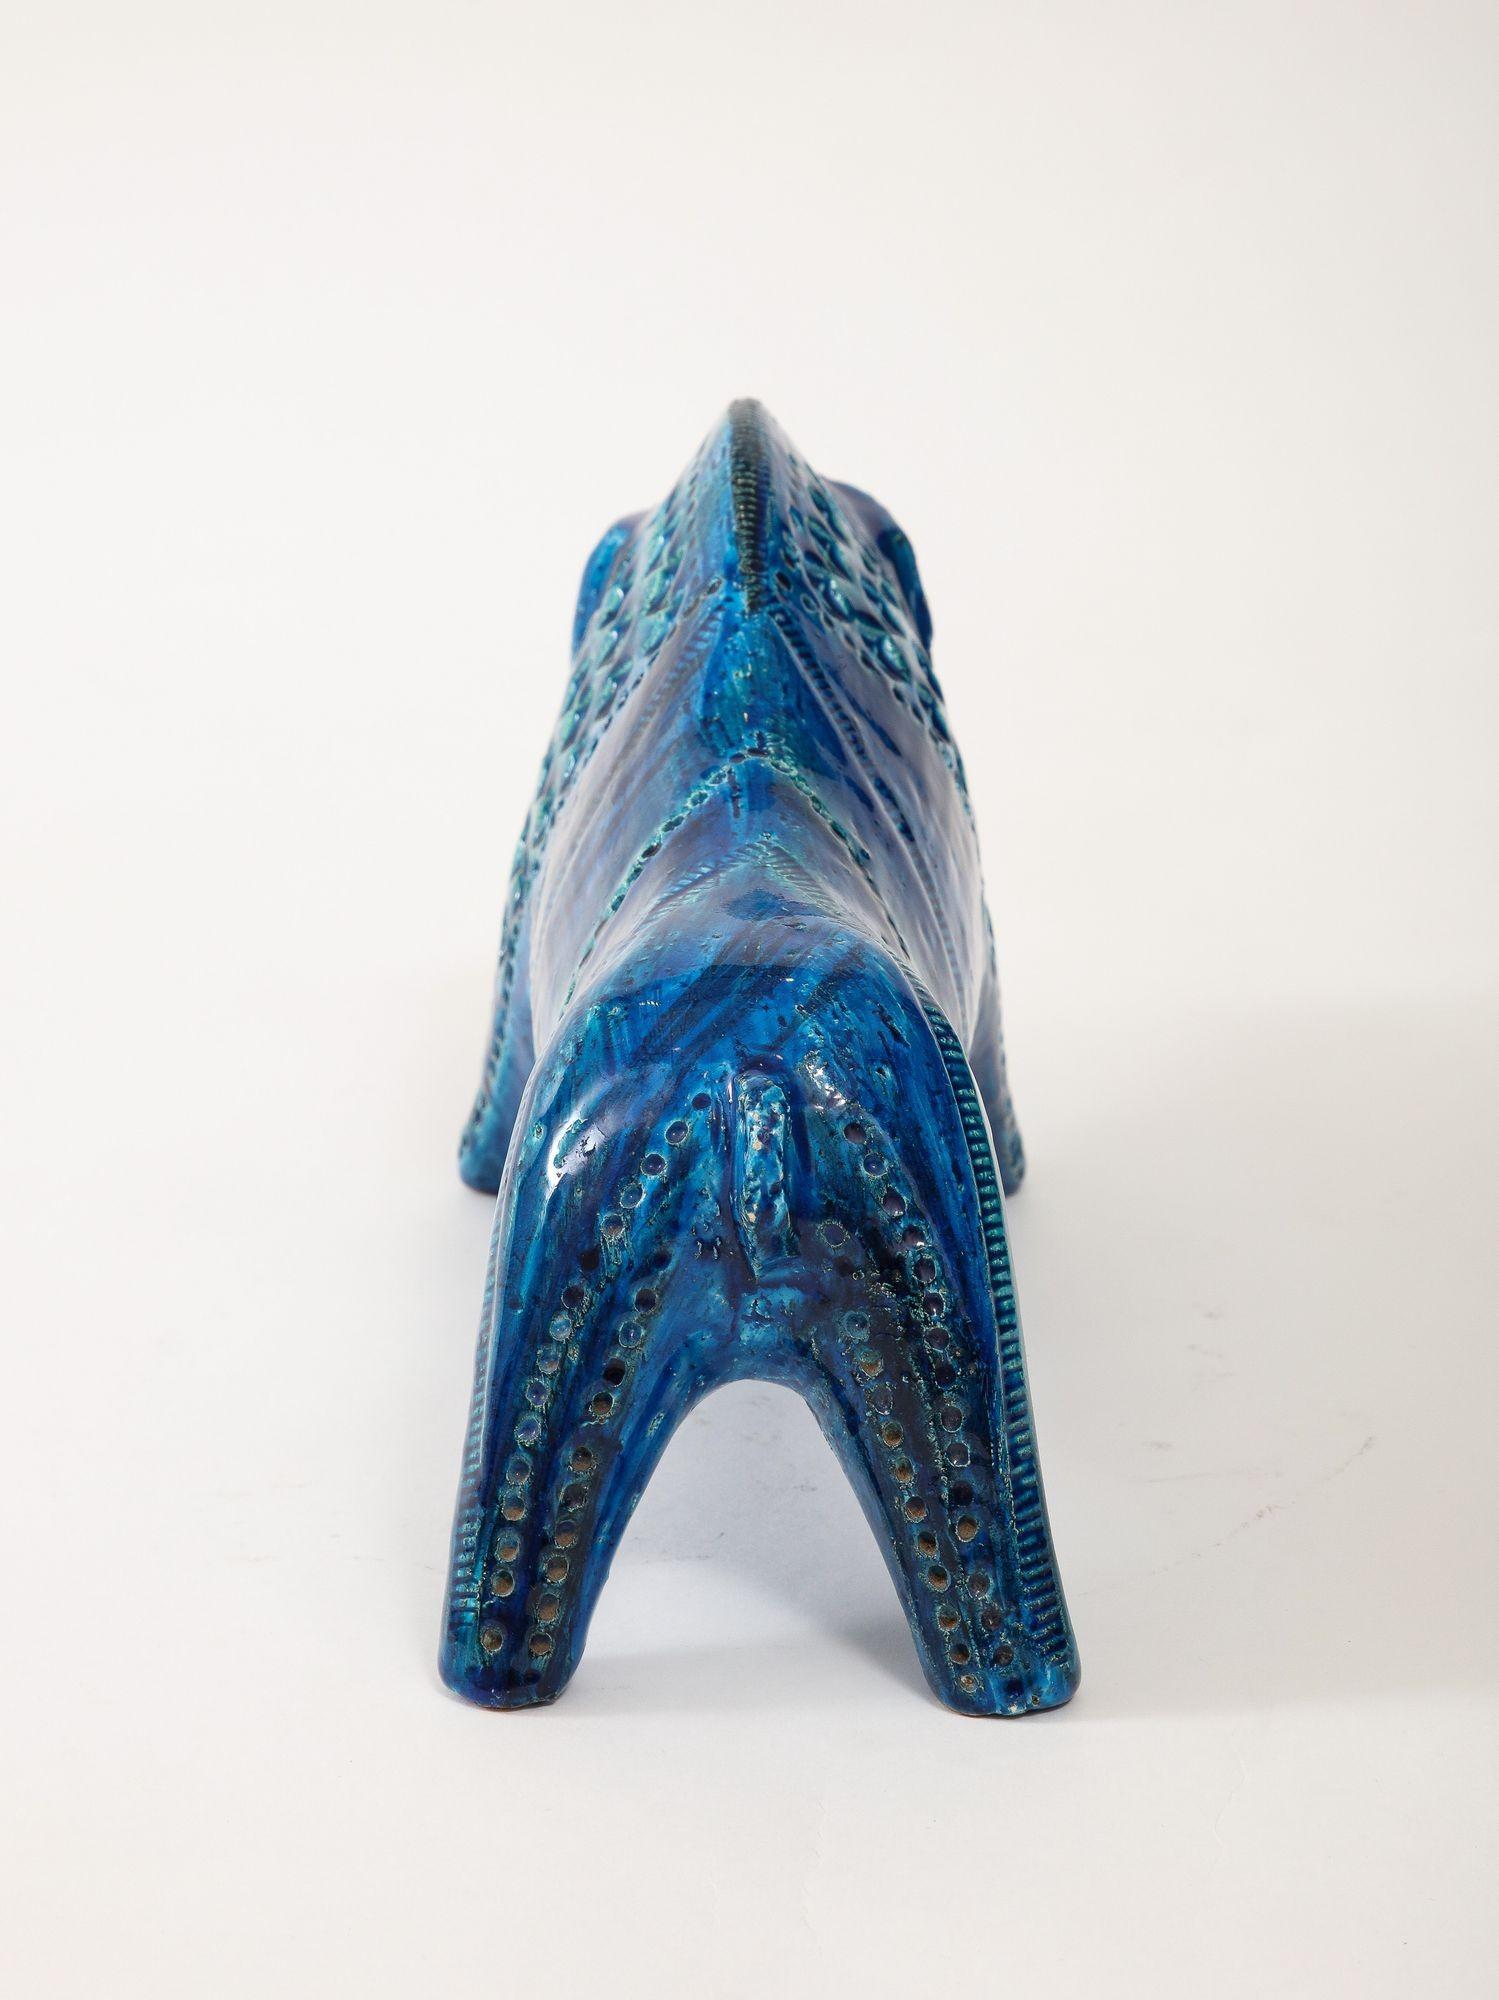 Ceramic Boar by Aldo Londi for Bitossi in 'Rimini blue' Italy ca. 1960 For Sale 7